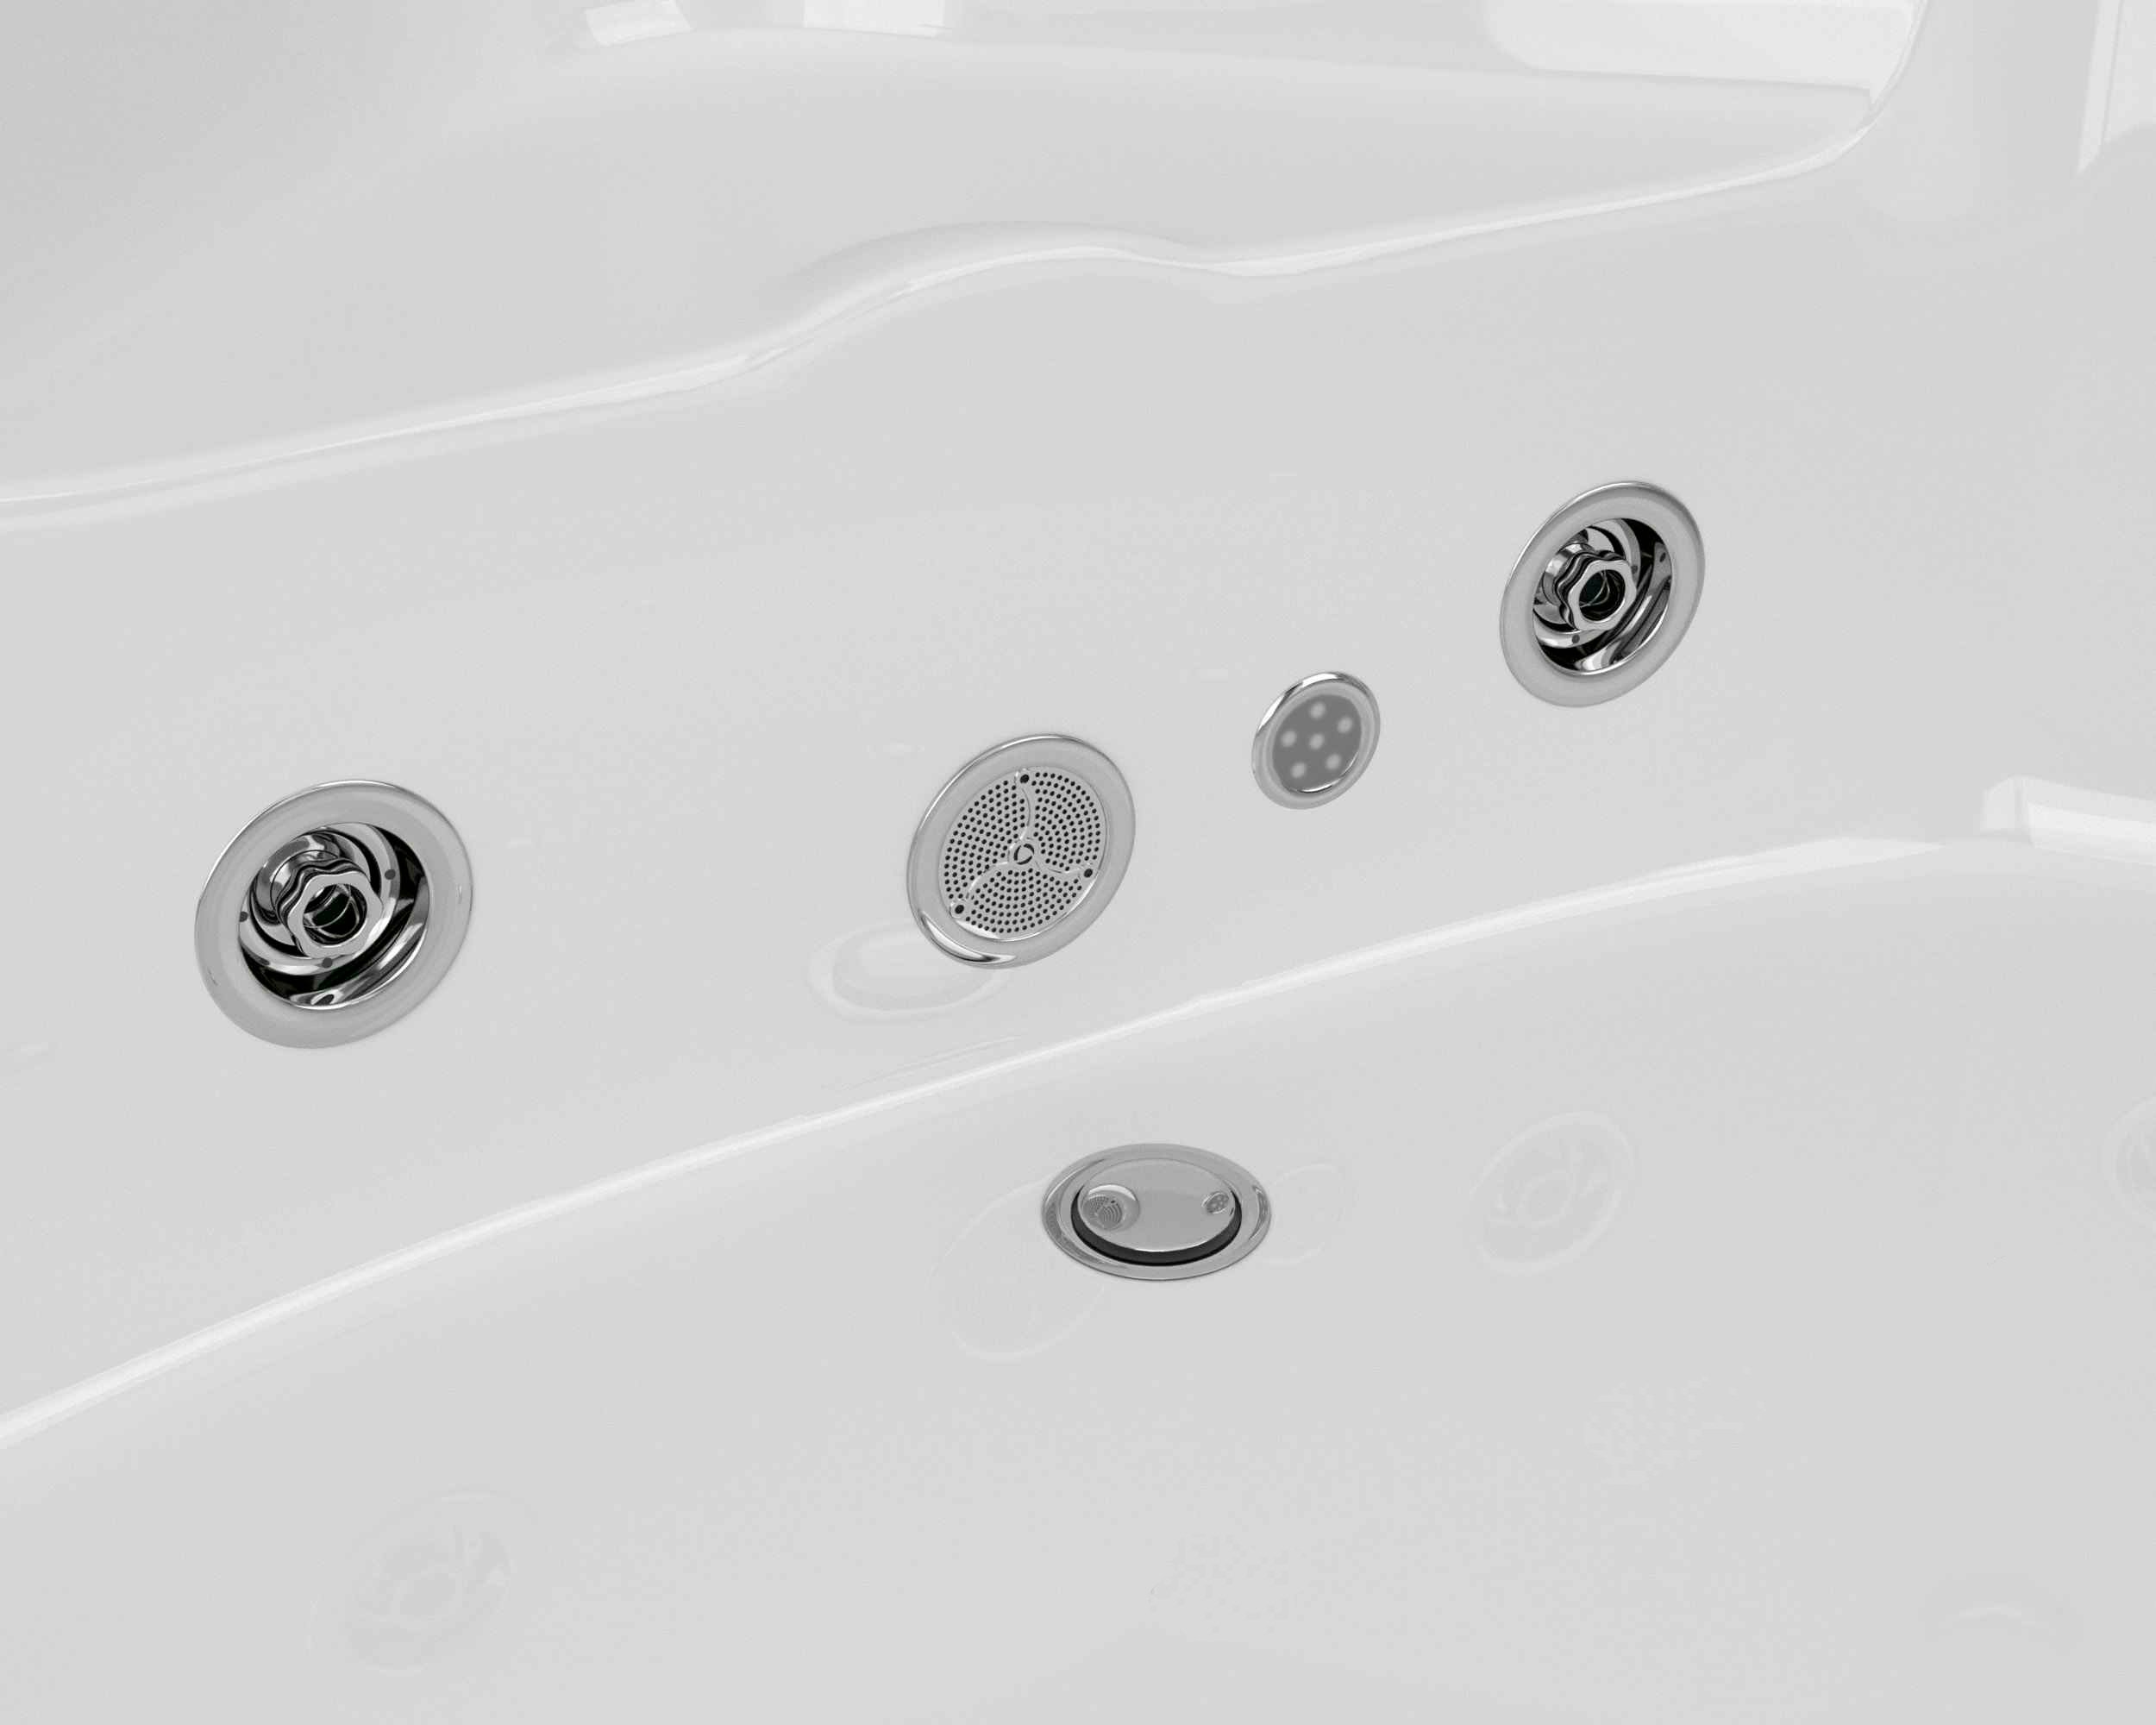 Гидромассажная ванна Grossman 150x150 GR-15000-1 с гидромассажем, размер 150х150, цвет белый - фото 5